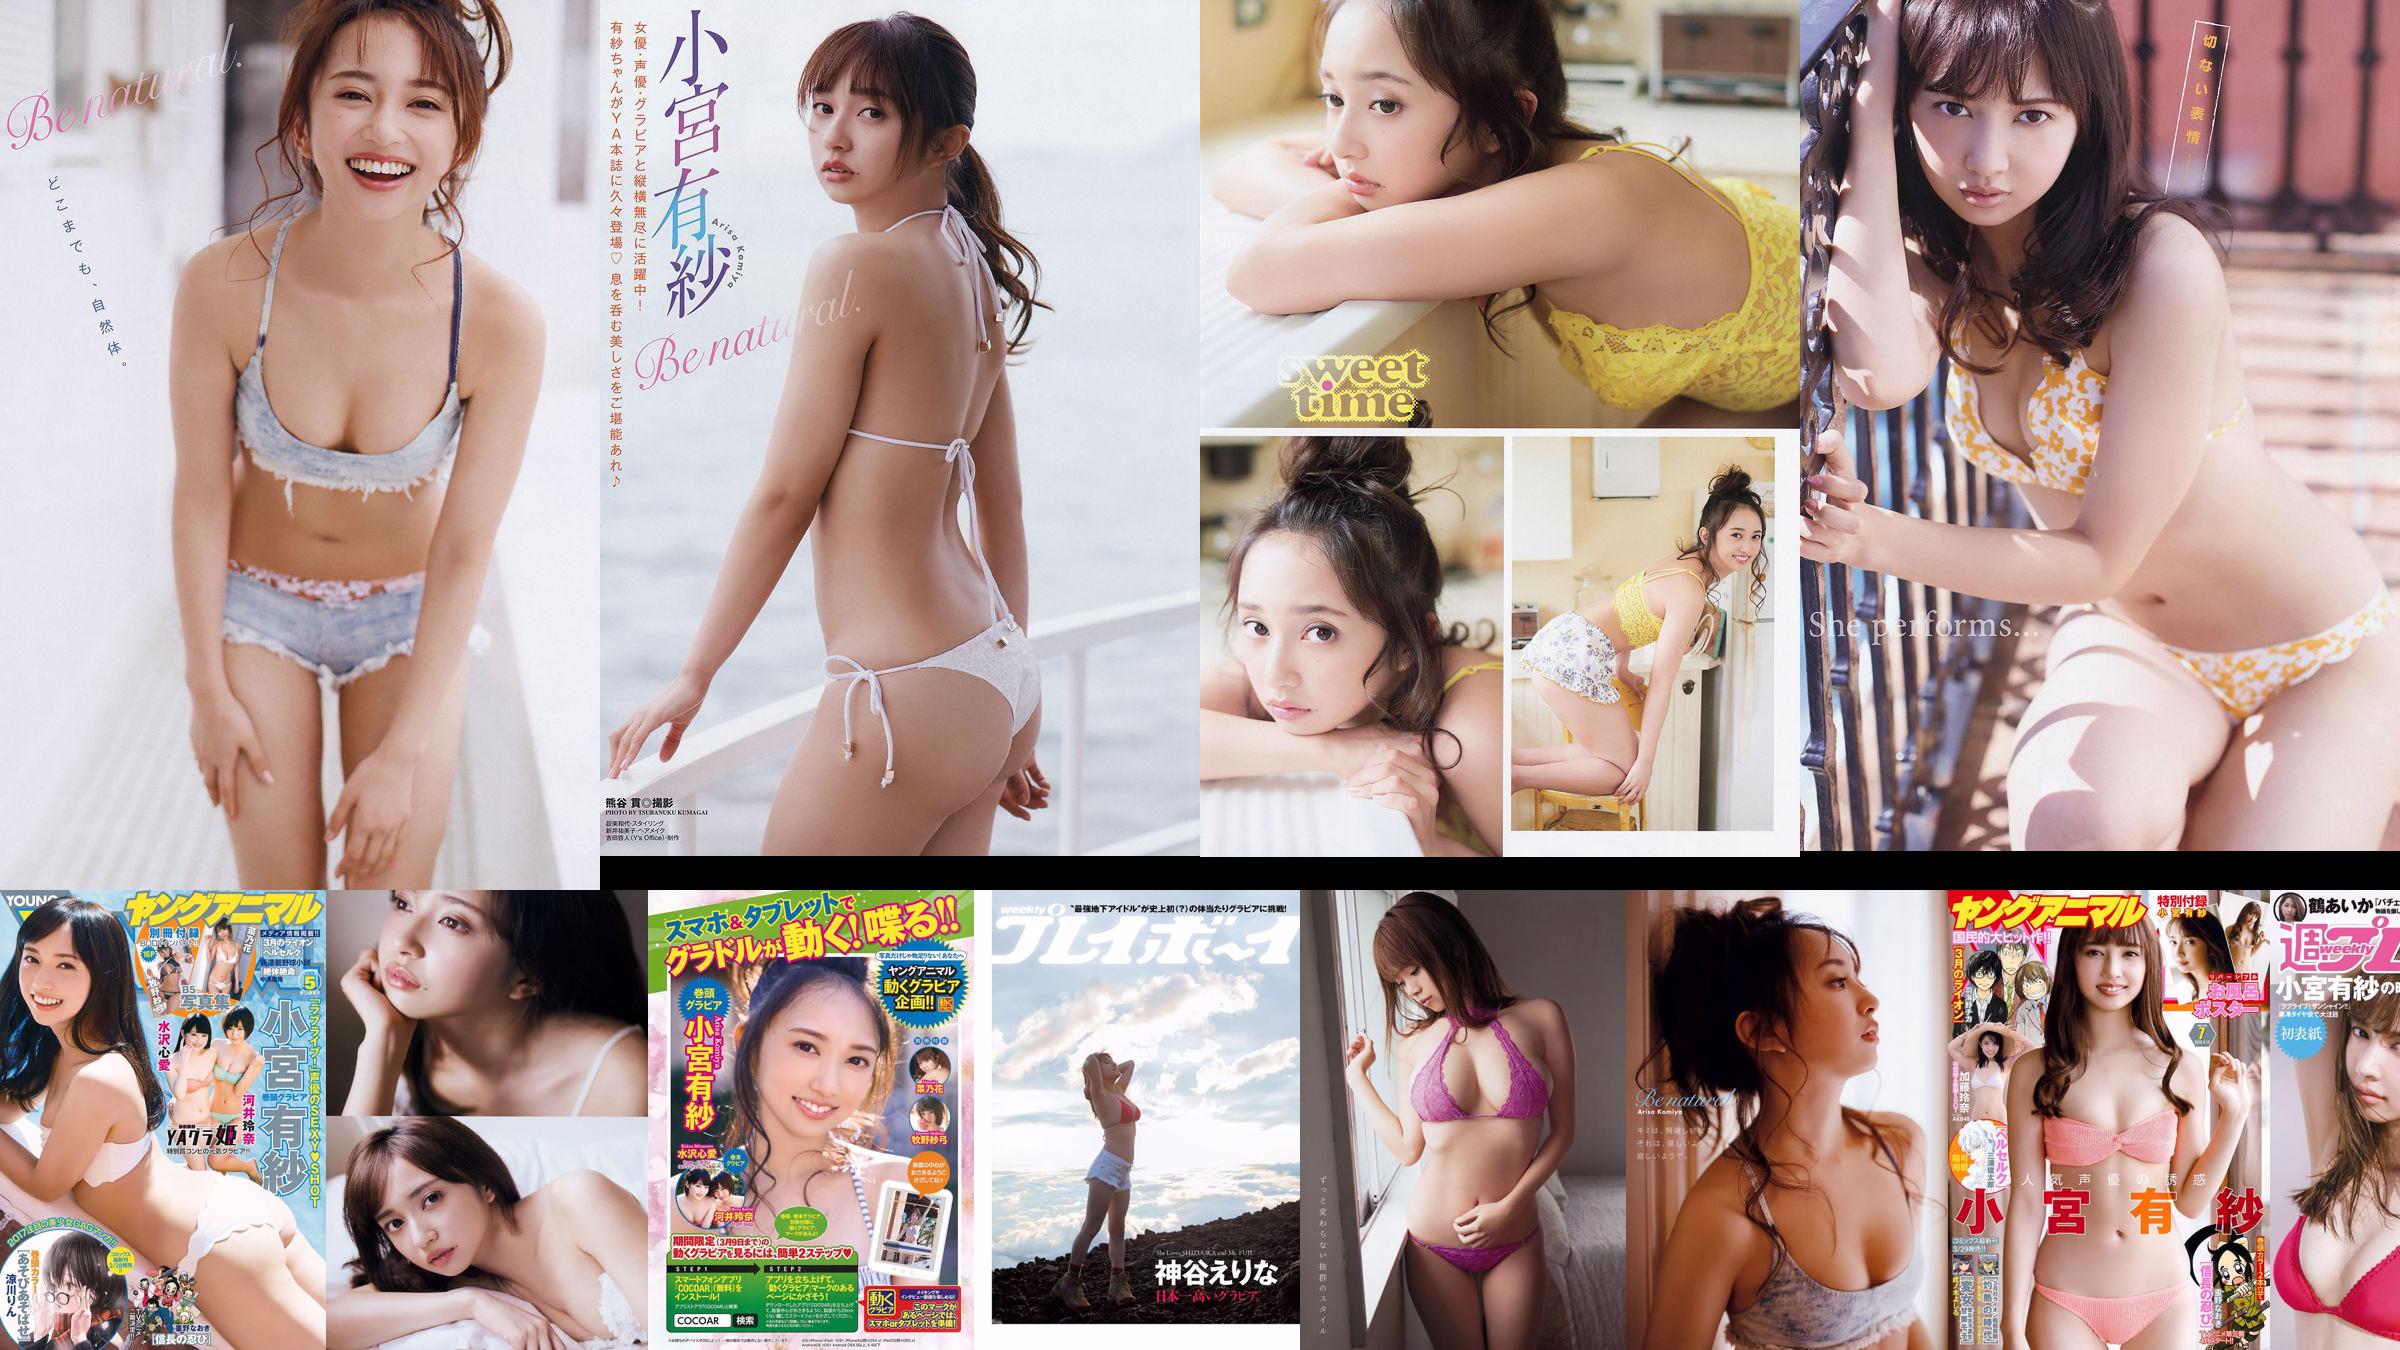 Arisa Komiya Rena Kato [Young Animal] 2018 No.07 Photo Magazine No.d2f2e6 หน้า 1